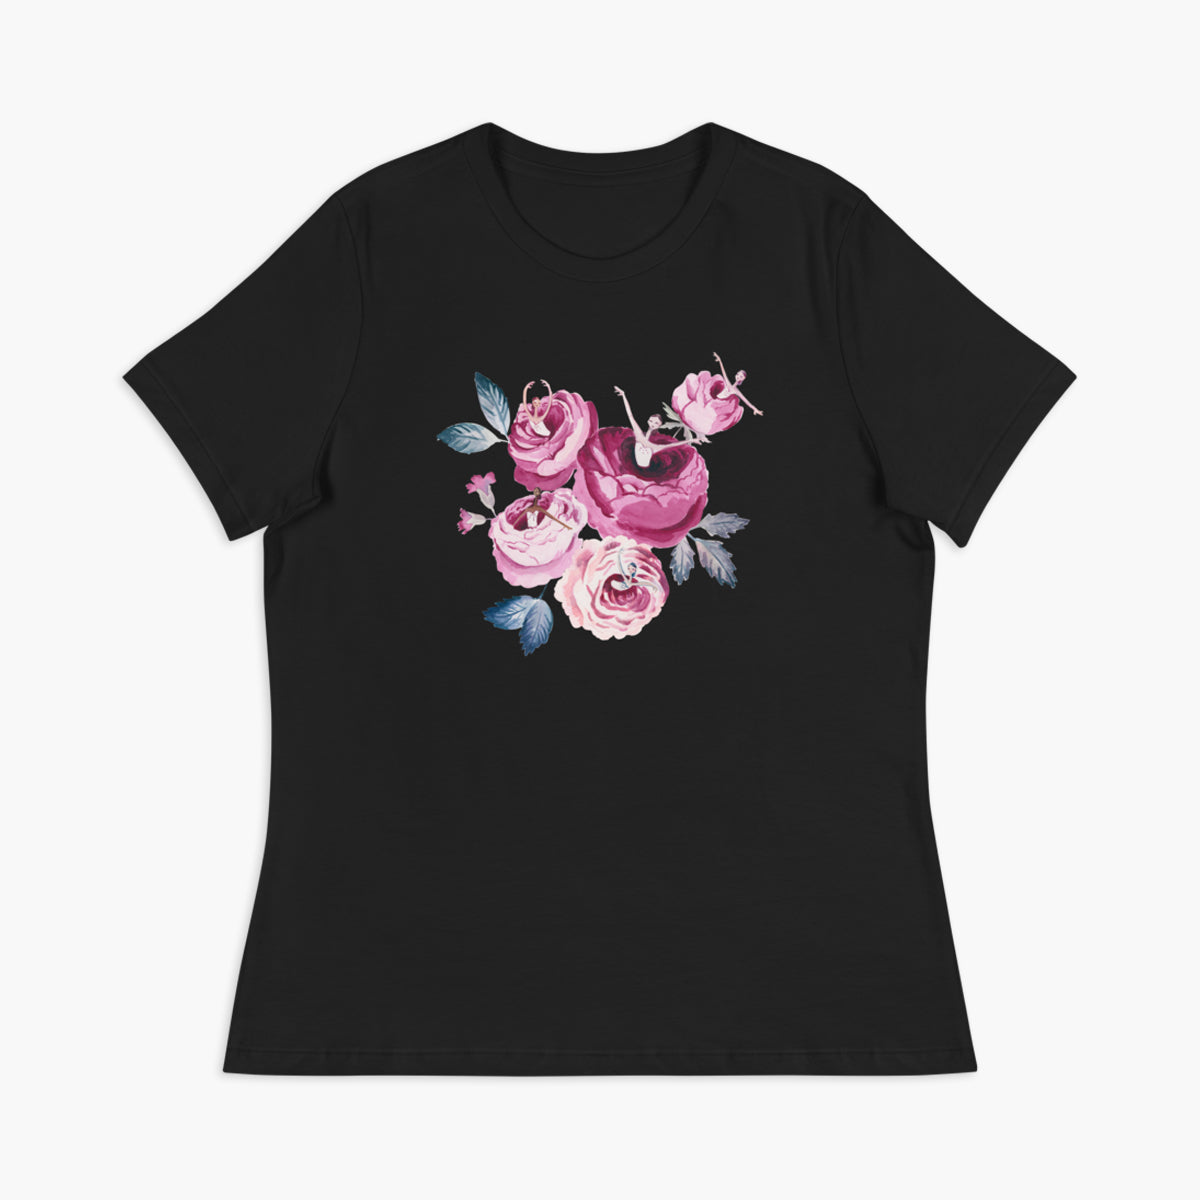 Waltz of the Garden Roses T-Shirt